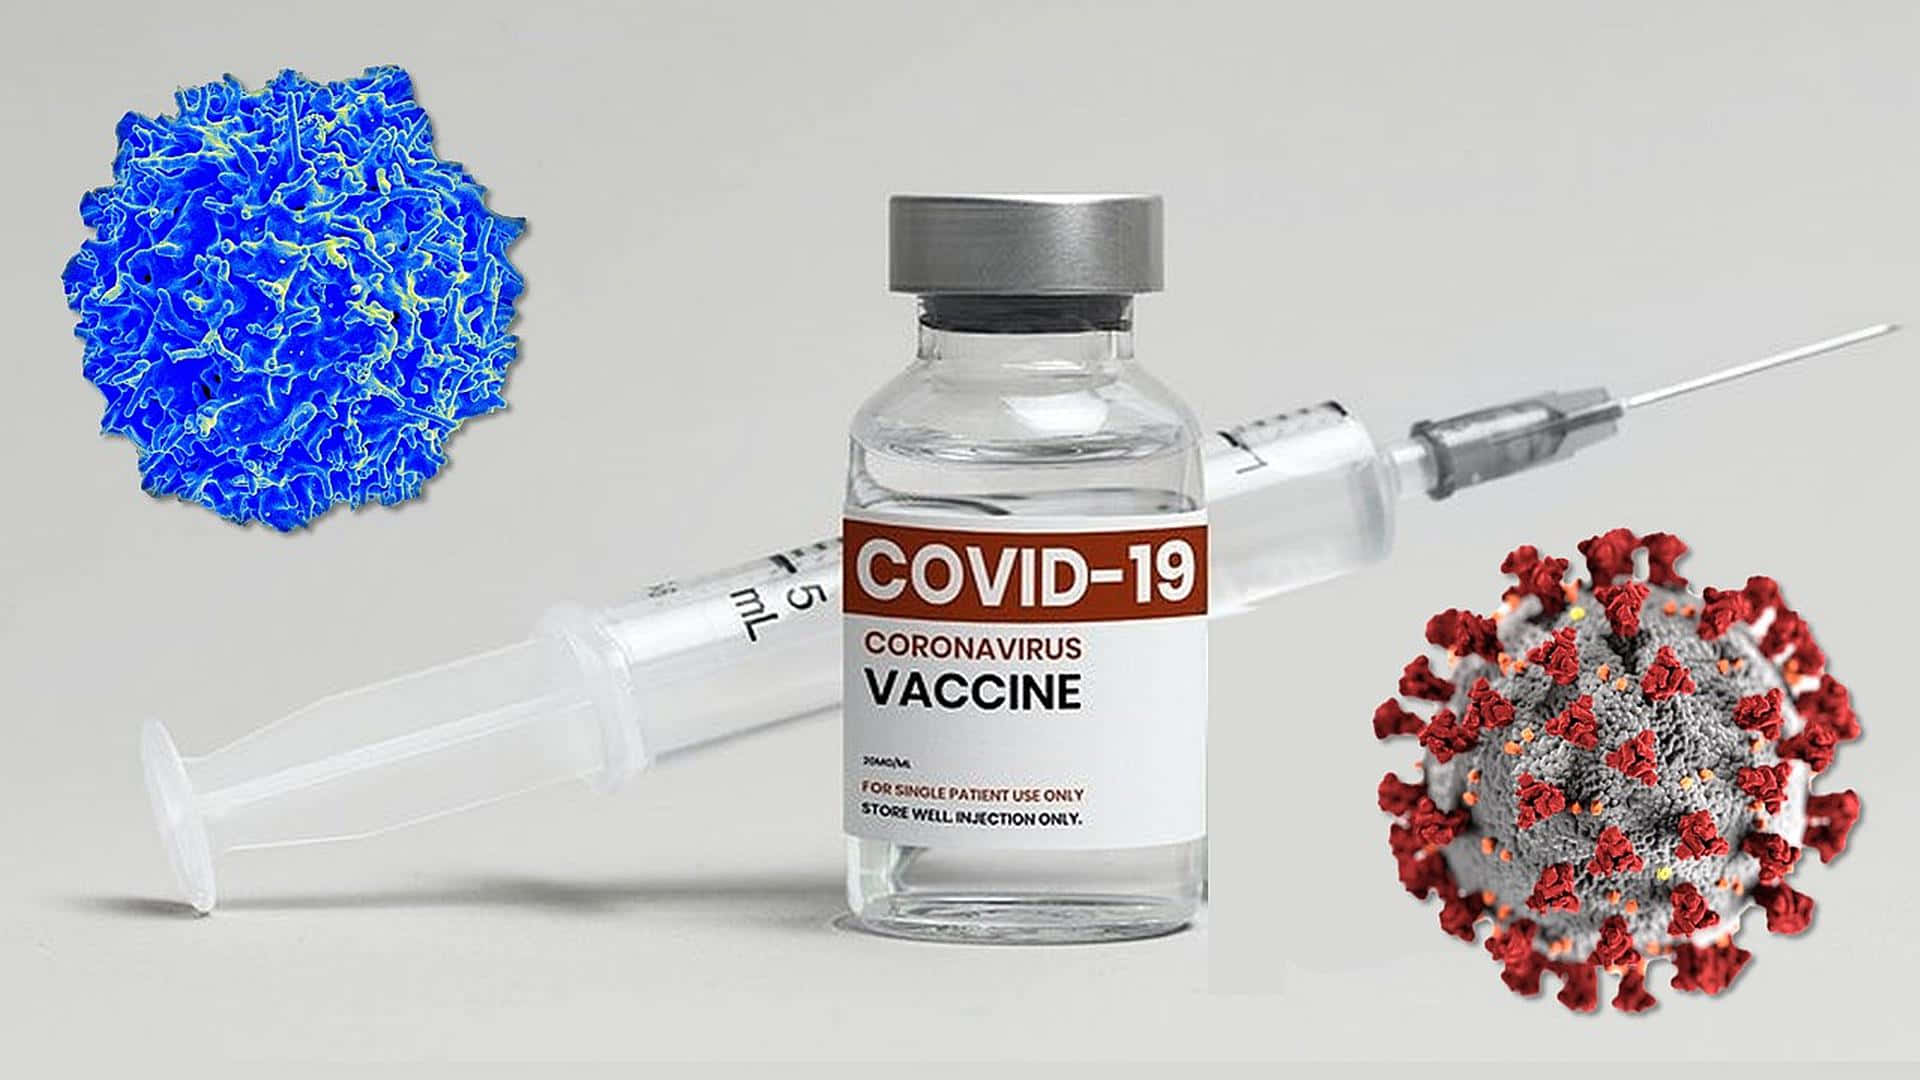 Covid-19 Coronavirus Vaccine Background